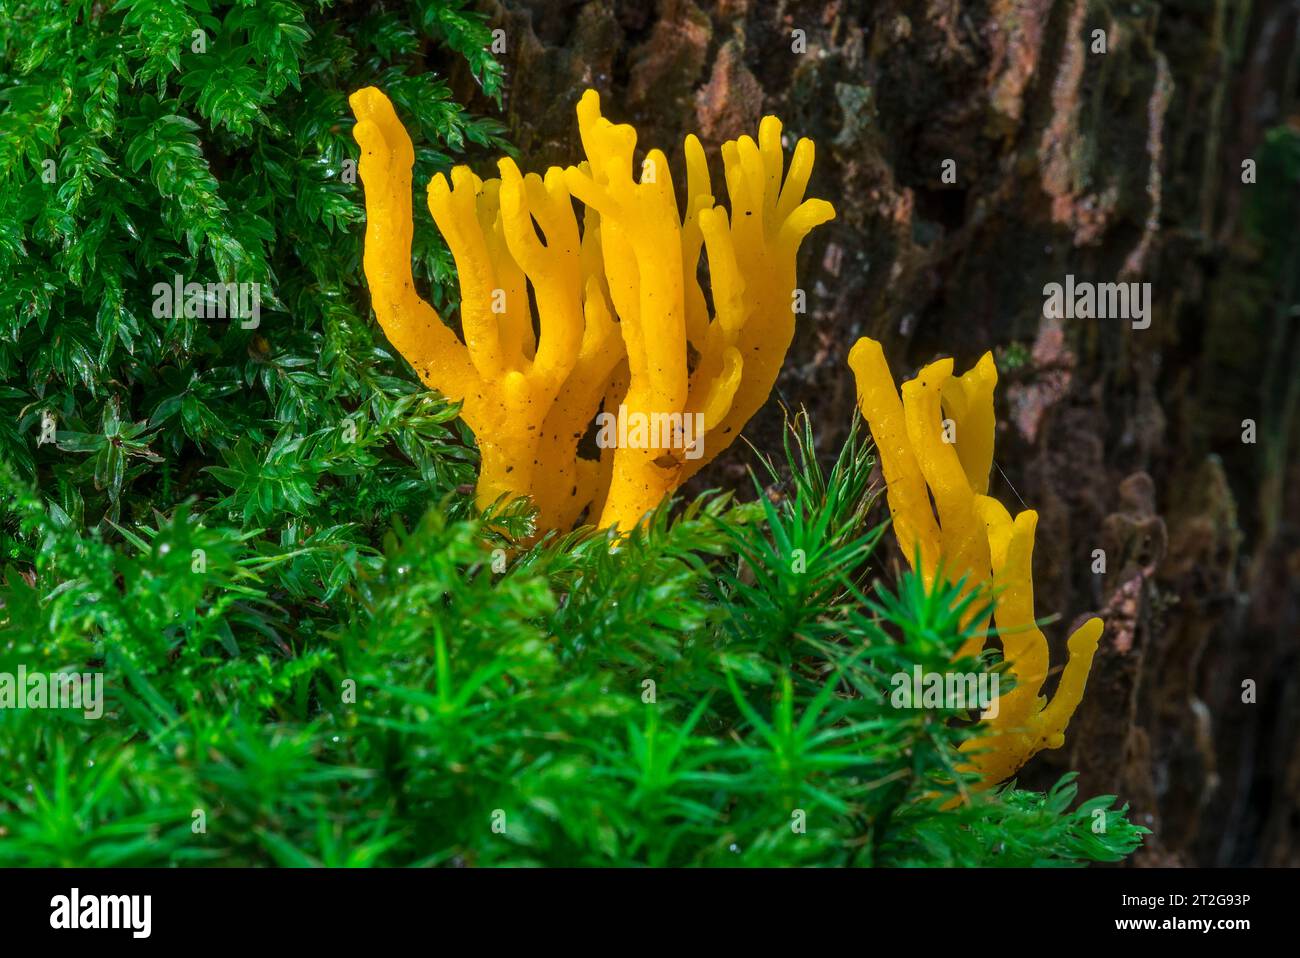 Gelbes Stagshorn (Calocera viscosa), Gelee-Pilz mit typischen orangenverzweigten Basidiokarpfen, die auf verfallendem Nadelholz im Herbstwald wachsen Stockfoto